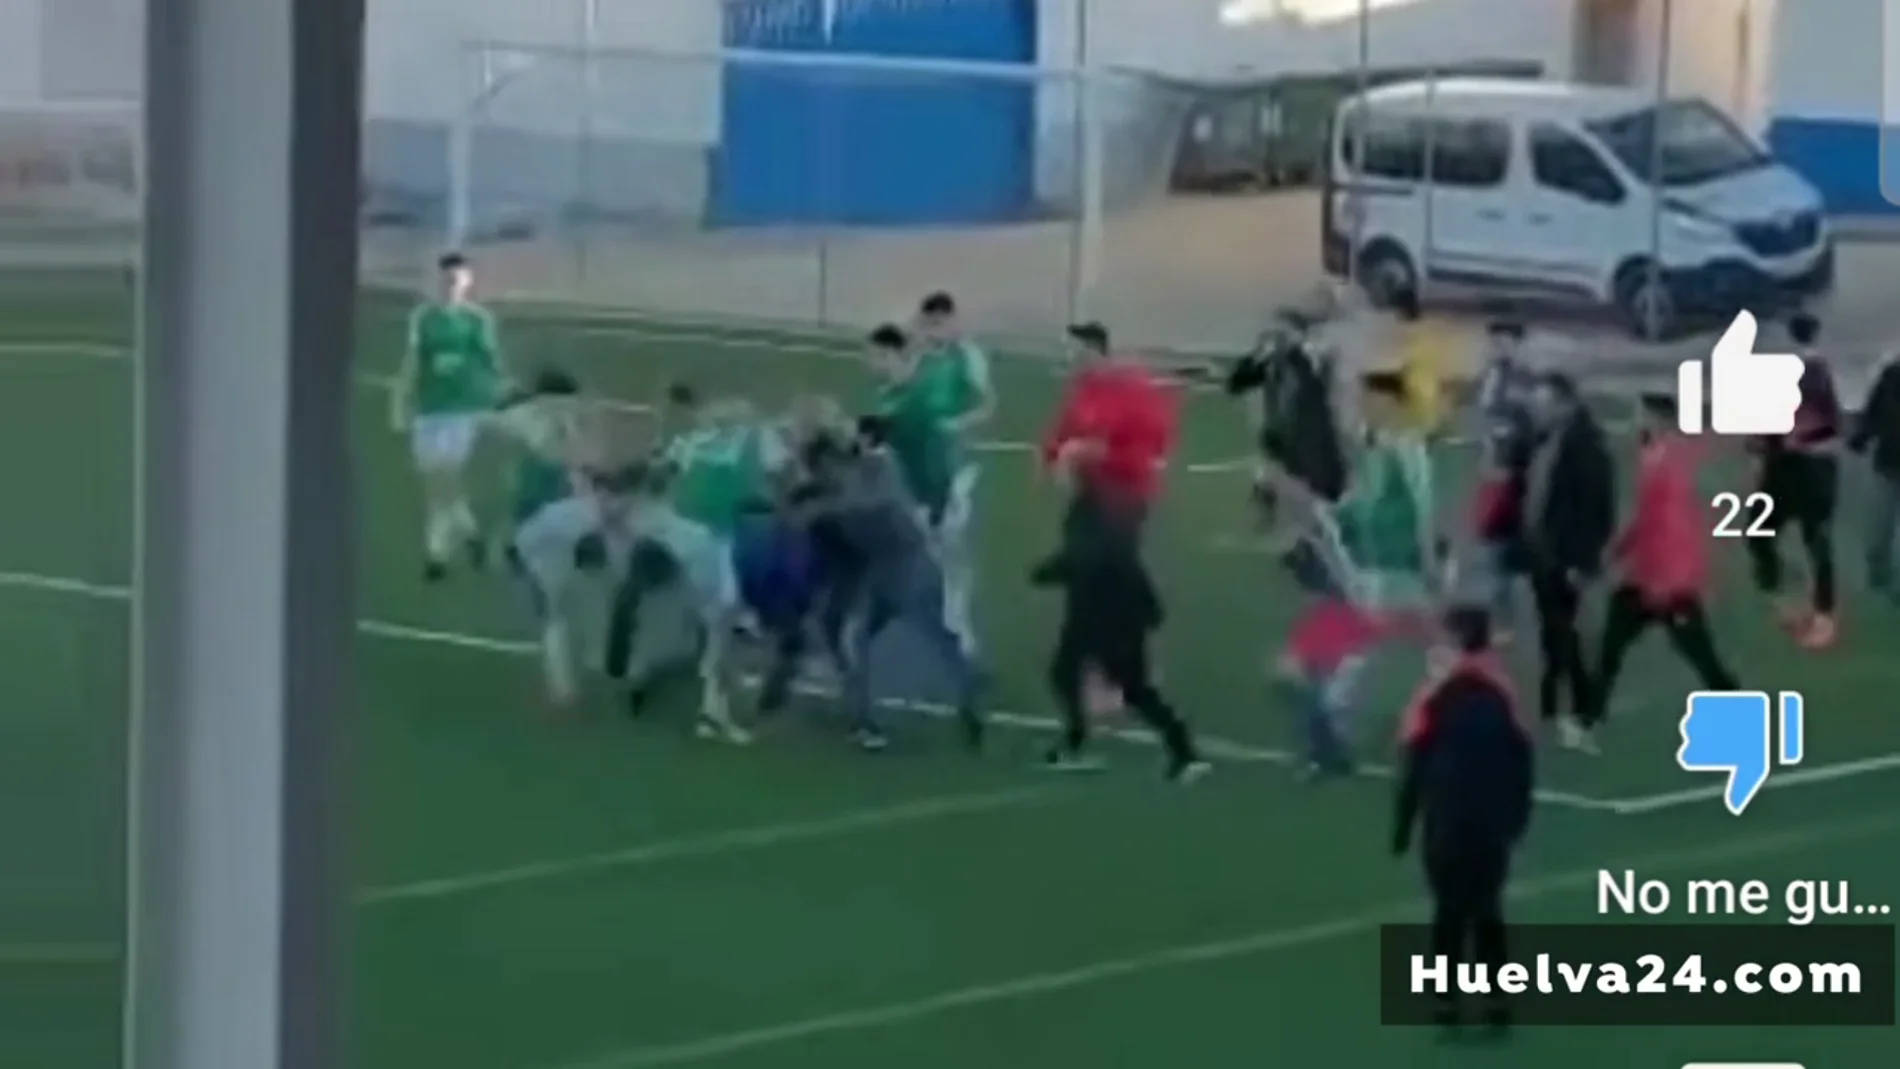 Patadas y puñetazos entre jugadores, nuevo episodio de violencia en un partido juvenil en Huelva 